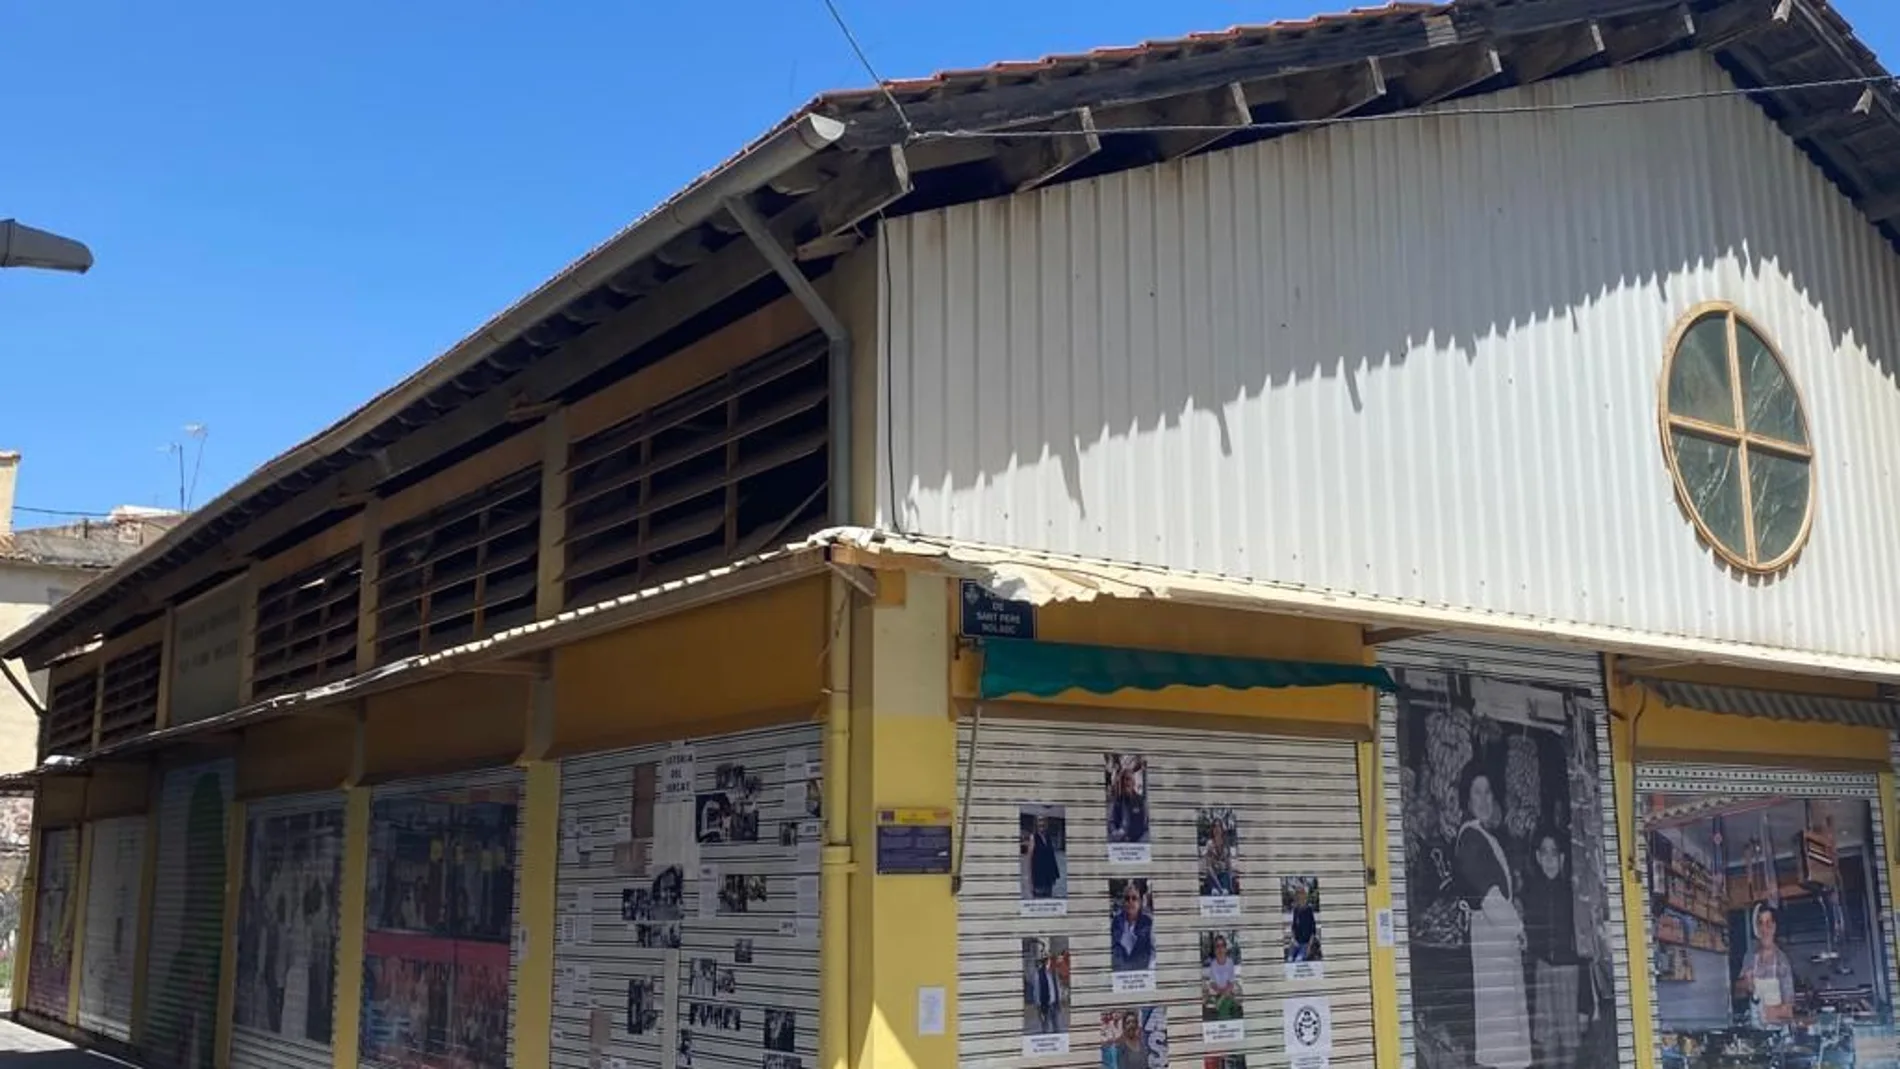 El mercado municipal de San Pedro Nolasco, en el barrio de Zaidía, es el único que está cerrado de toda la ciudad